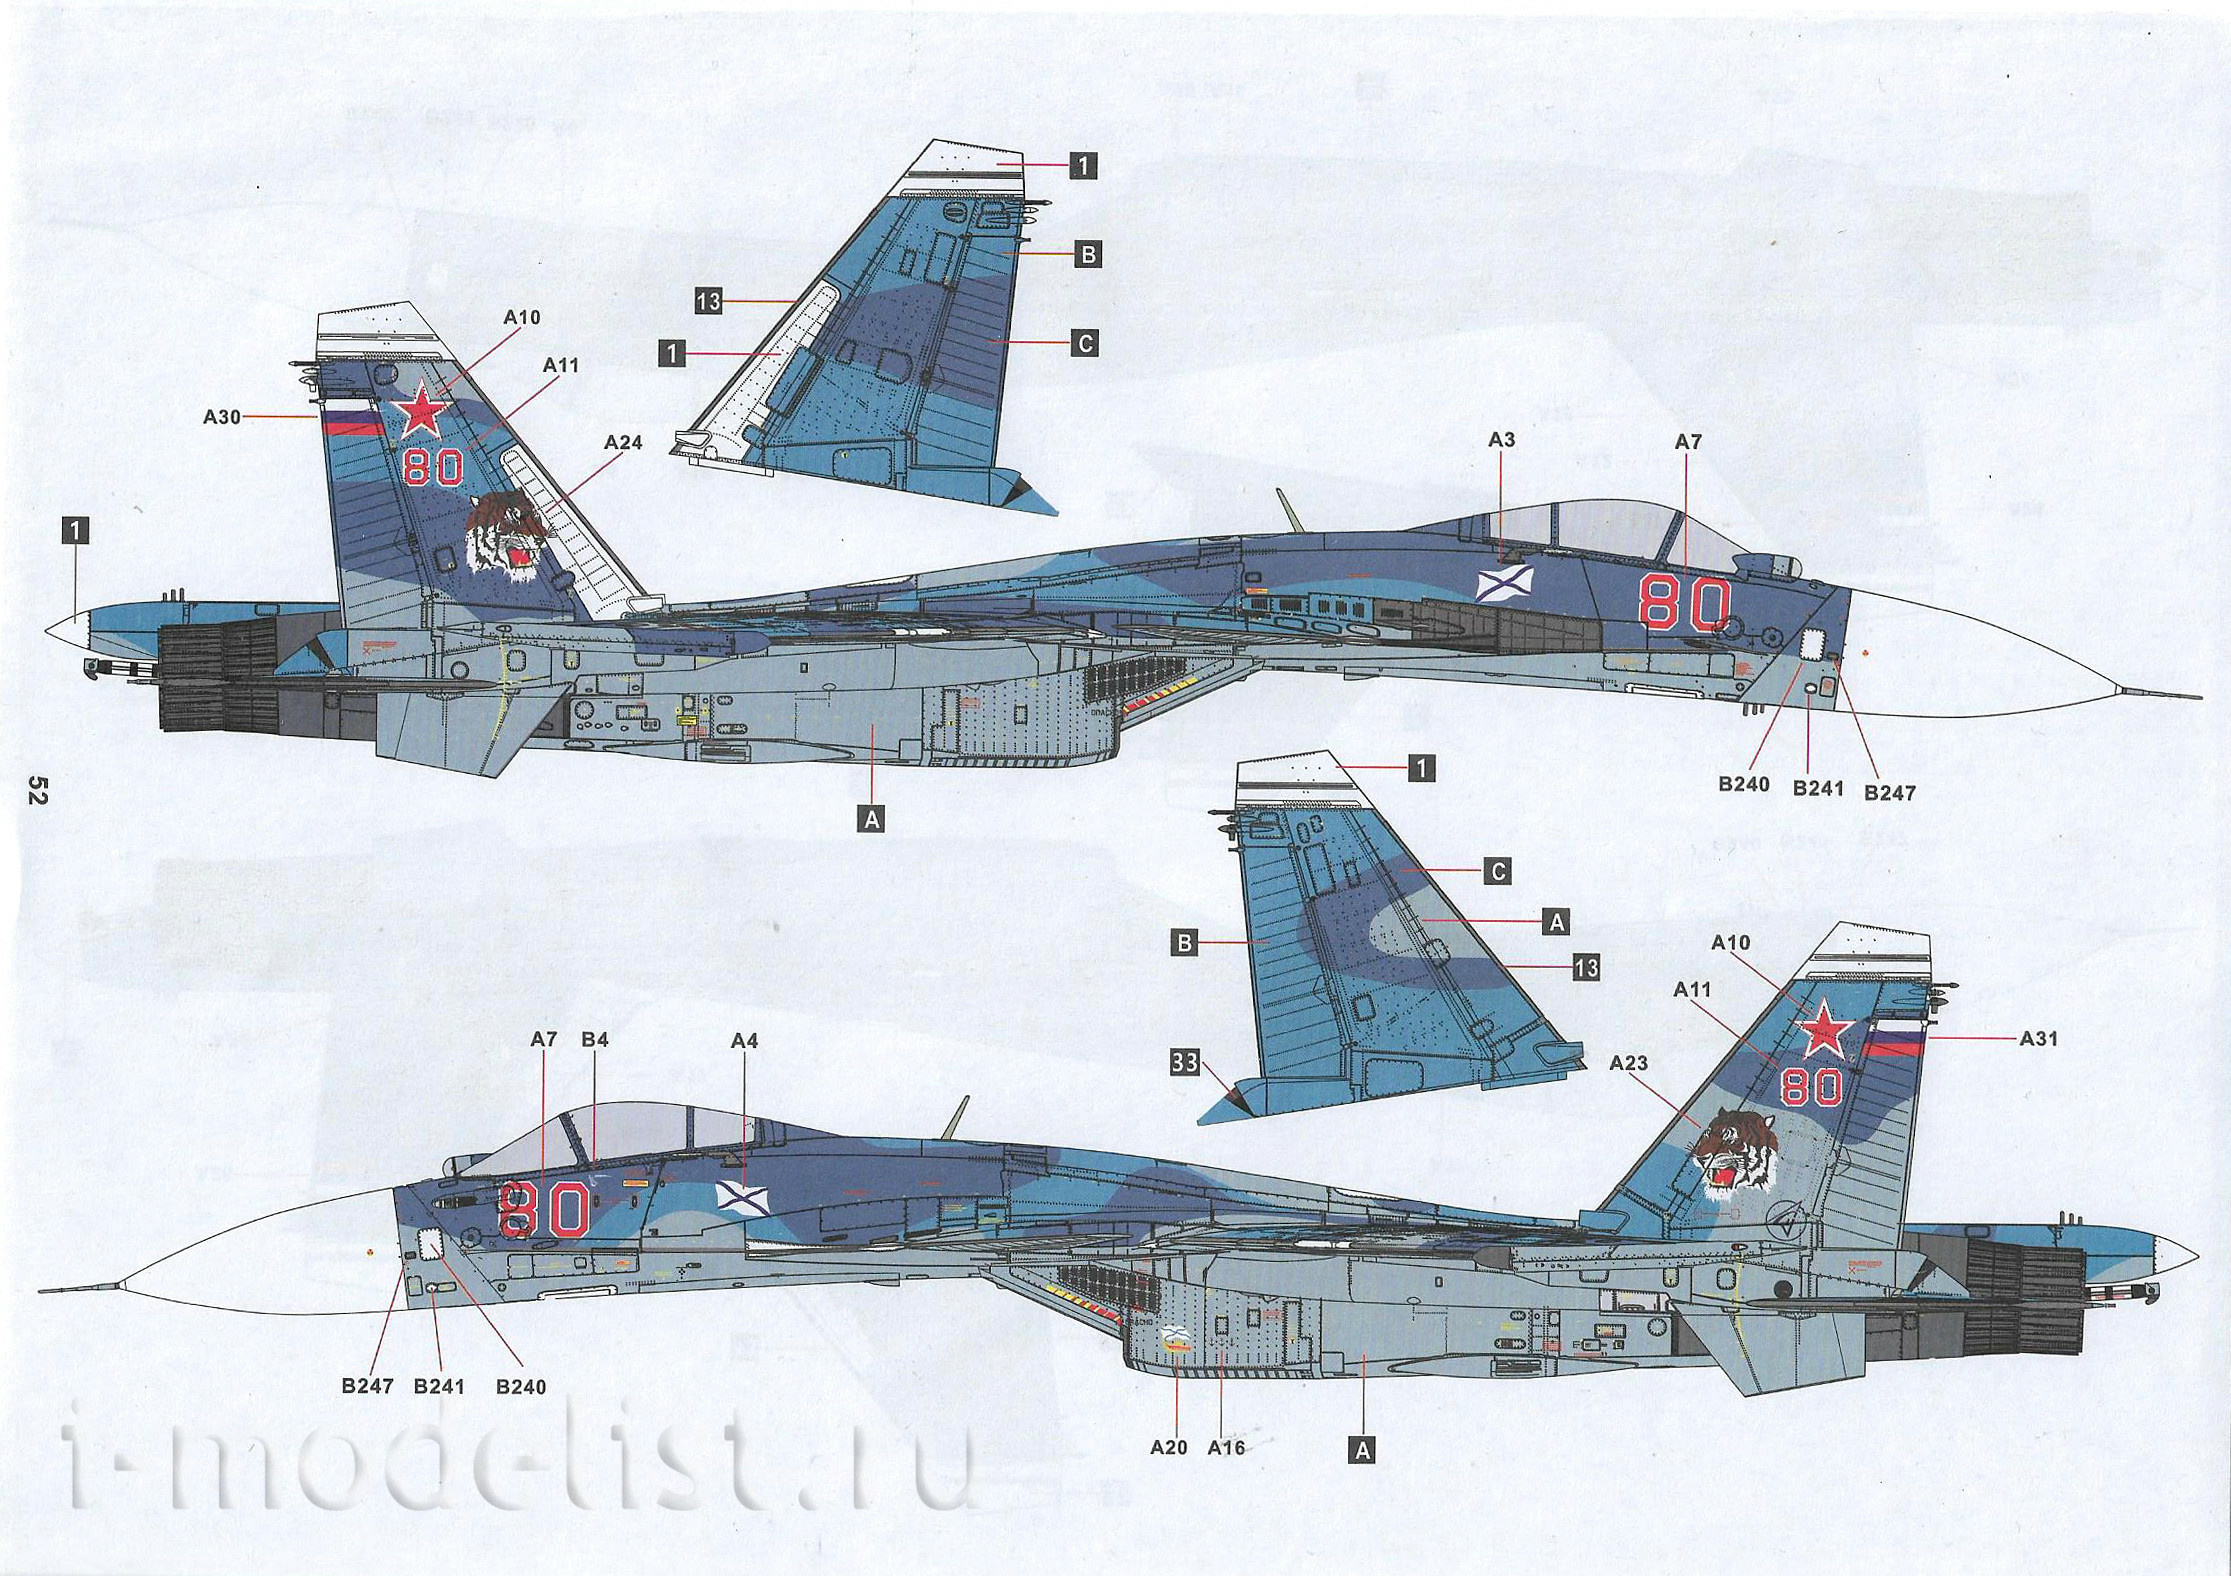 8001 MiniBase 1/48 Российский палубный истребитель Суххой-33 Flanker-D